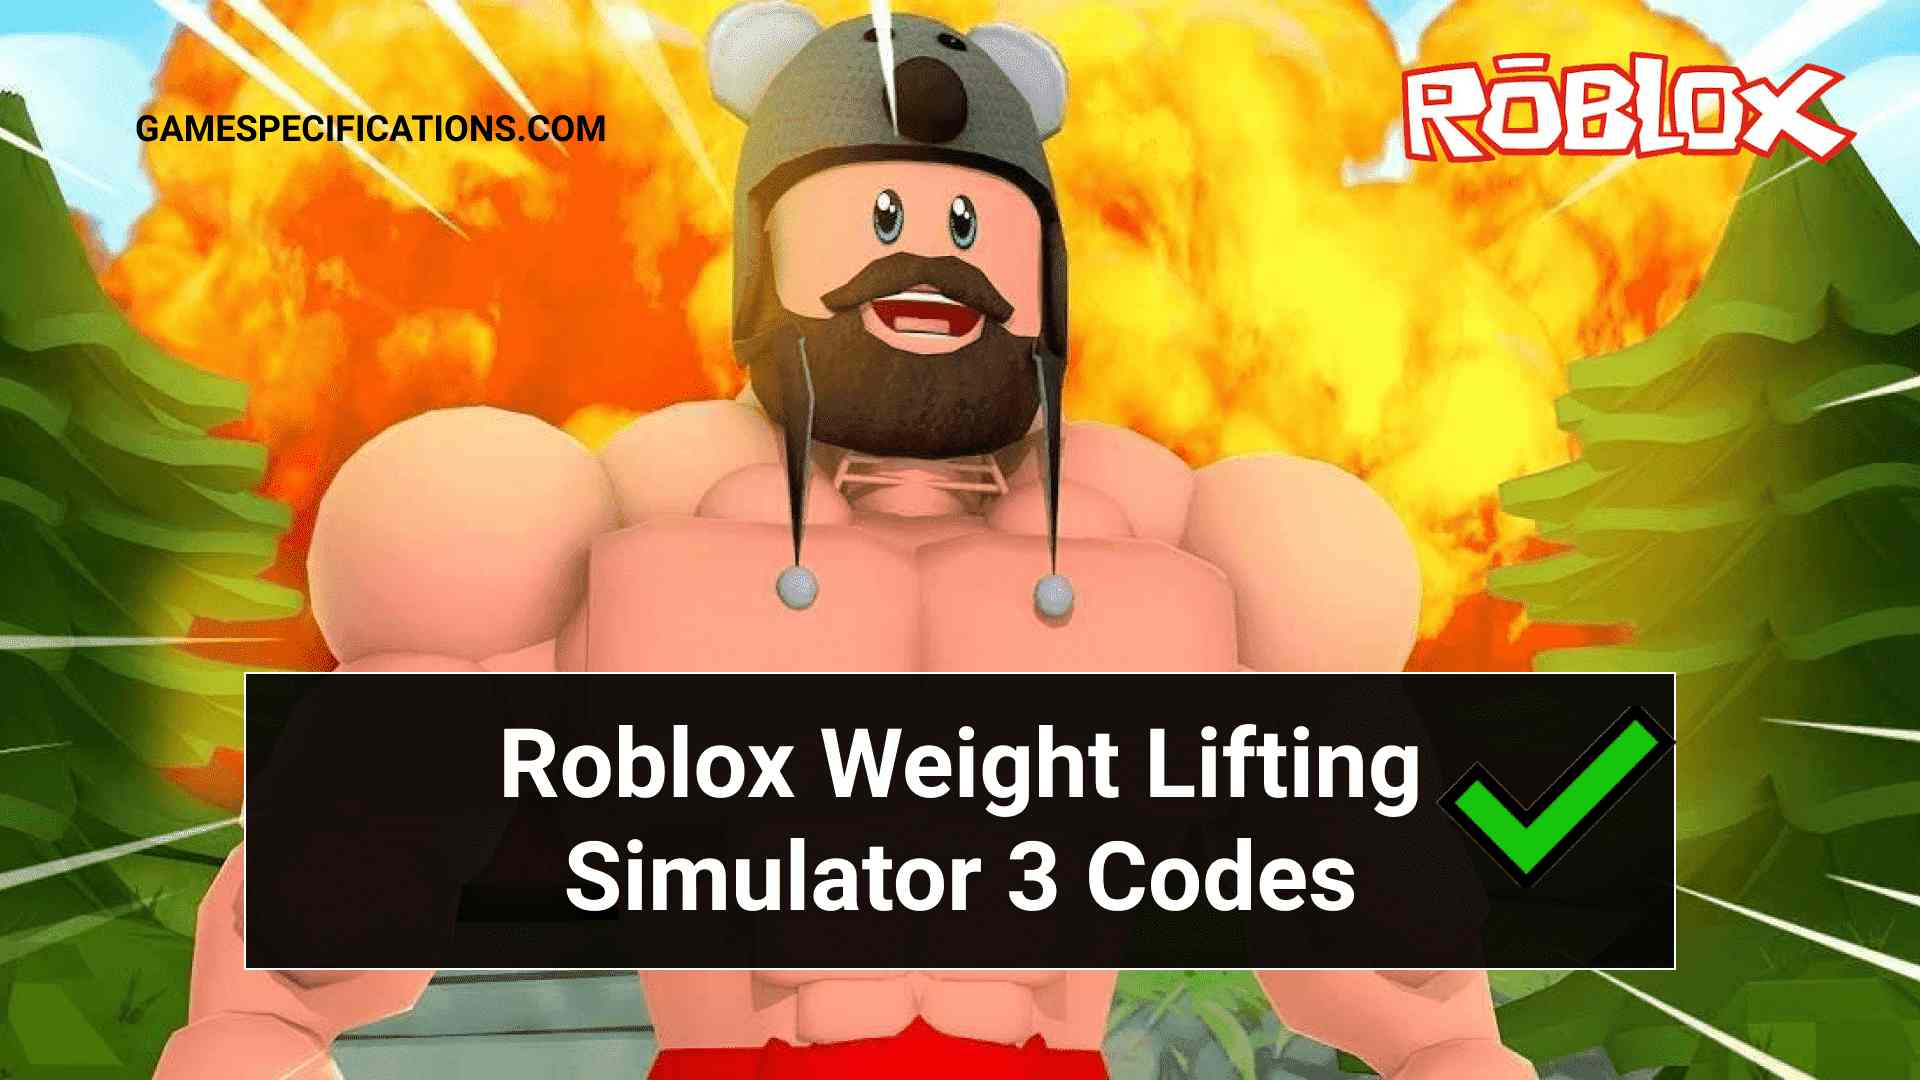 17 Roblox Weight Lifting Simulator 3 Codes July 2021 Game Specifications - roblox weight lifting simulator 5 codes